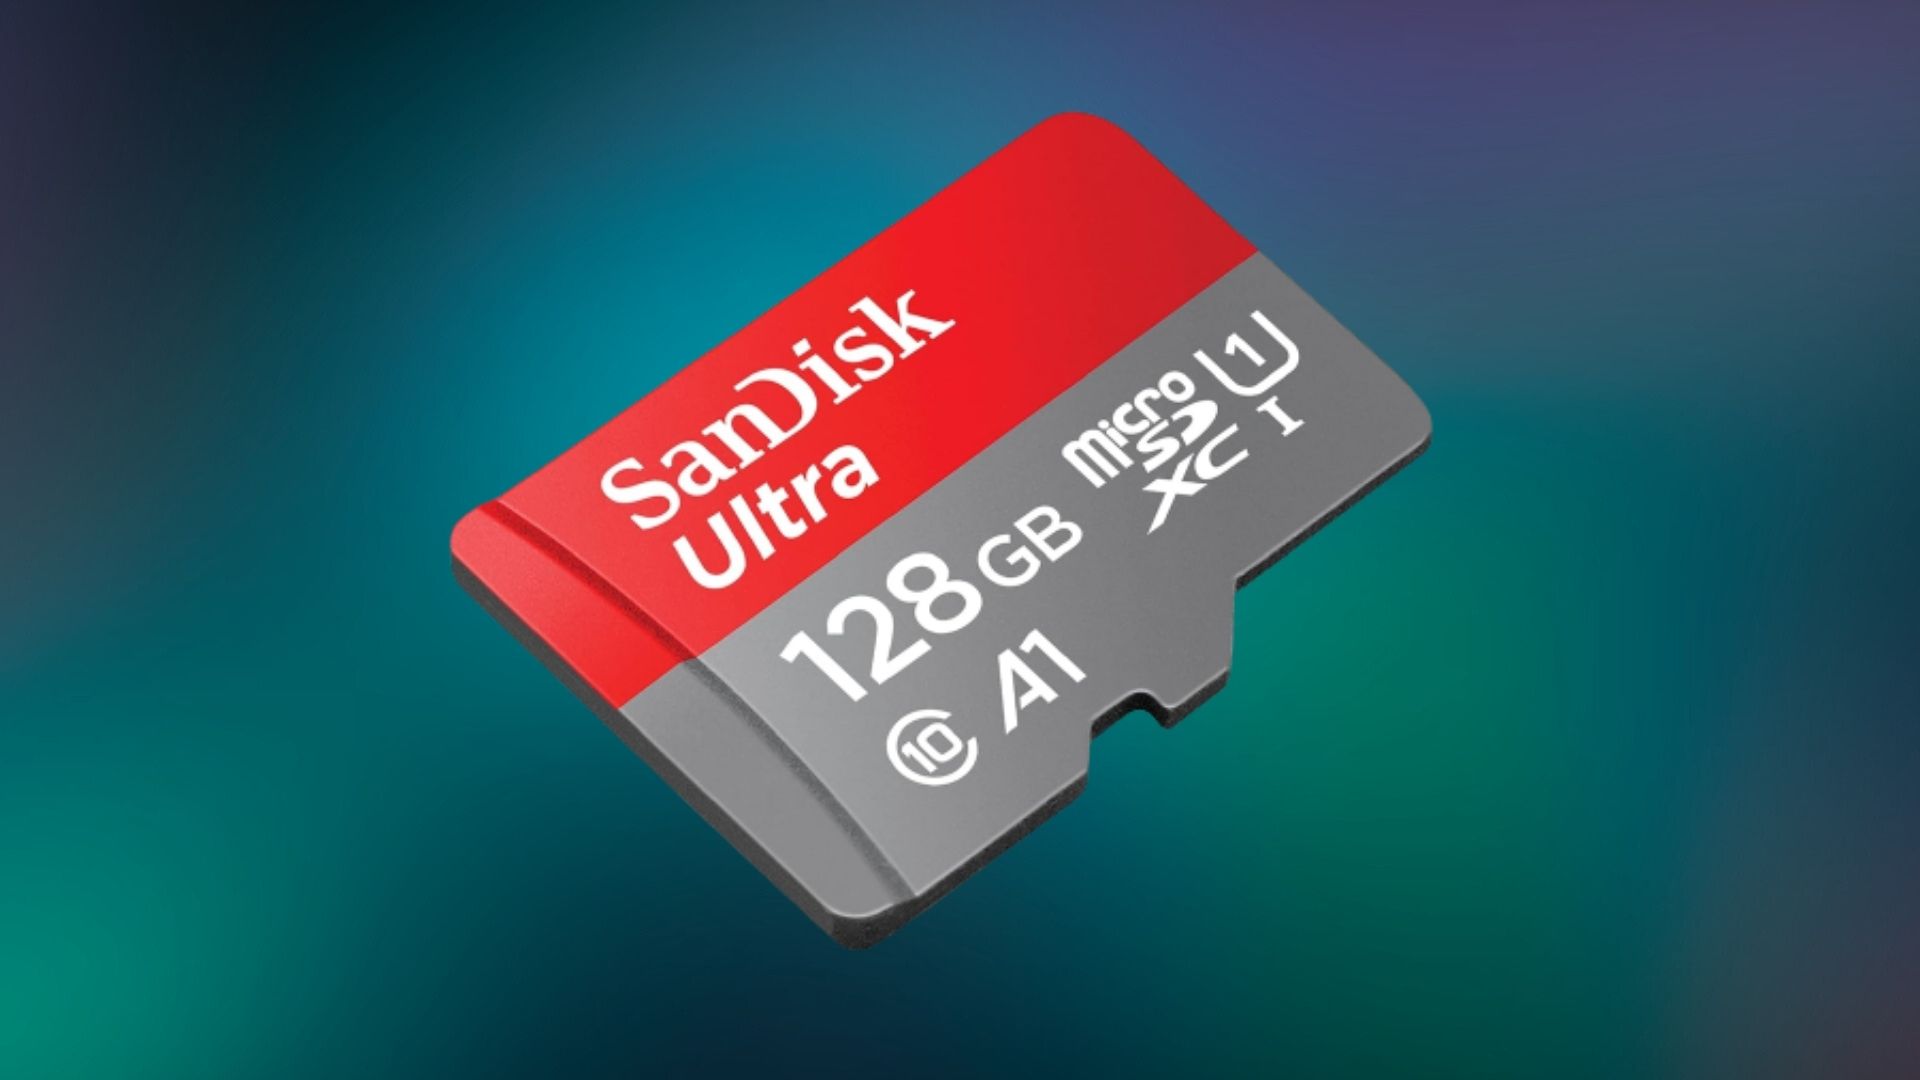 La carte SD SanDisk Extreme PRO 256 Go est à prix cassé